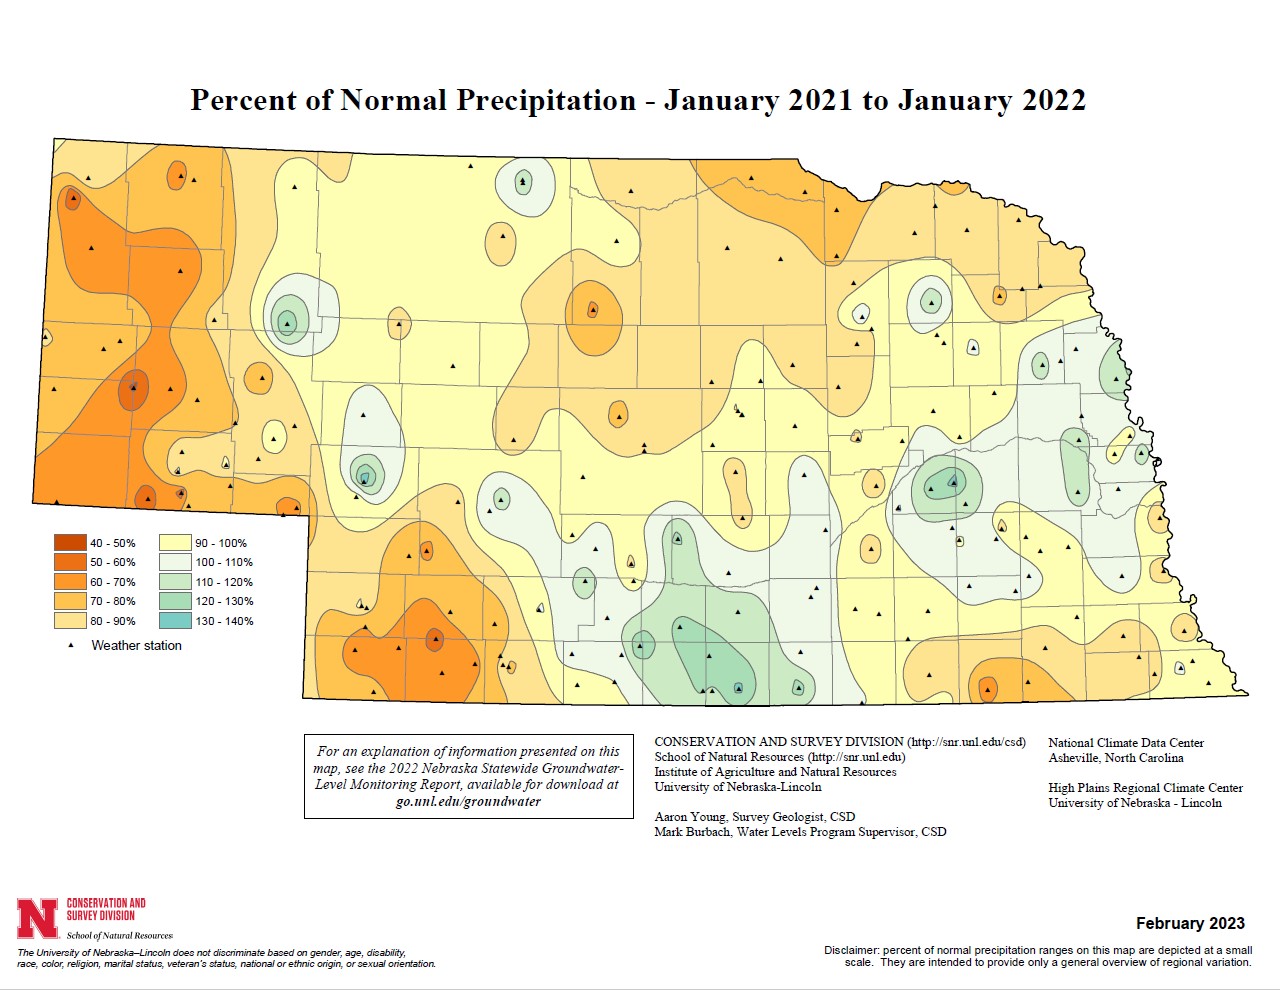 Percent of Normal Precipitation, January 2021 - January 2022